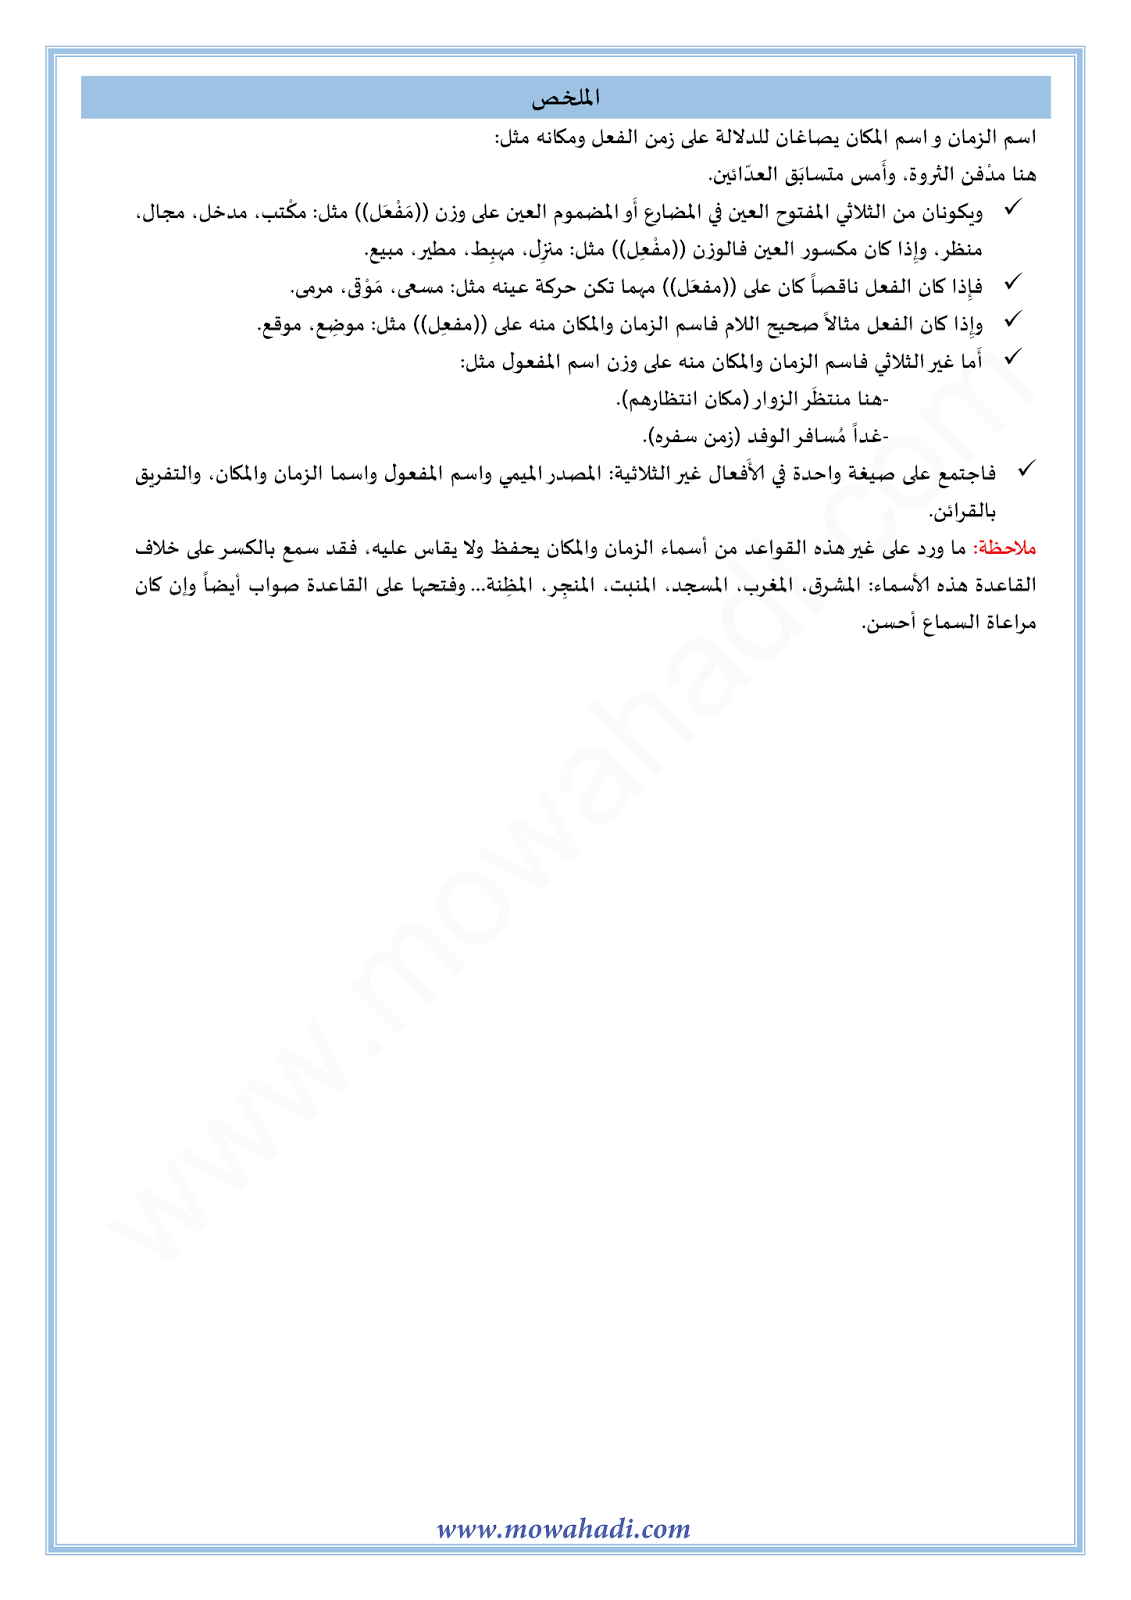 الدرس اللغوي اسم الزمان و المكان للسنة الثالثة اعدادي في مادة اللغة العربية 3-cours-dars-loghawi3_002